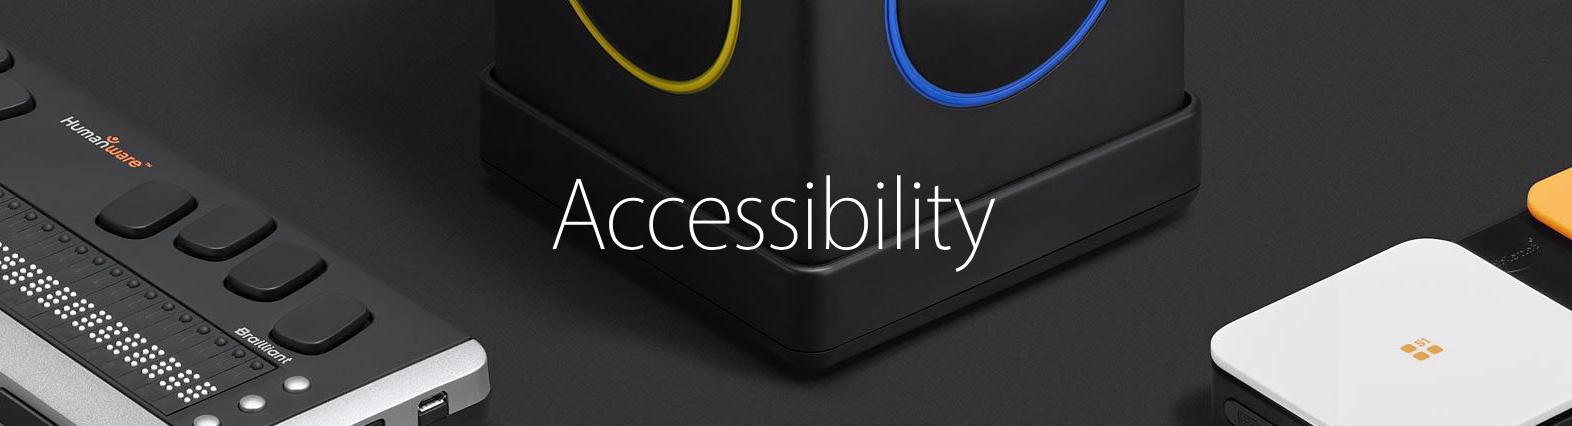 accessibility-apple.jpg